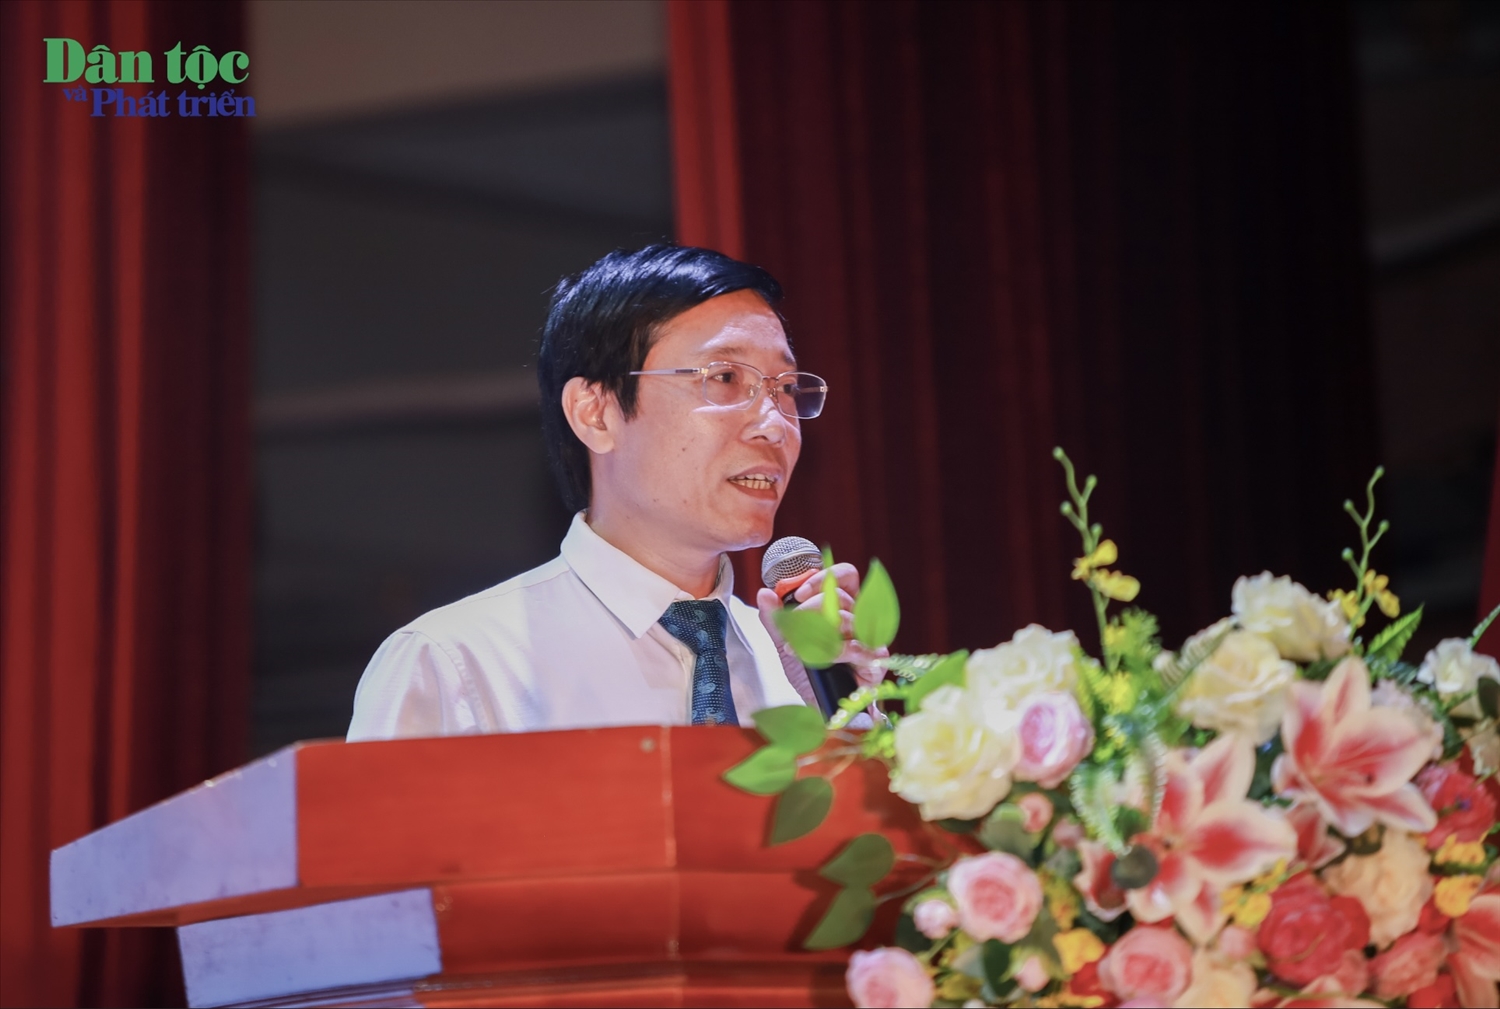 Phó Giám đốc Học viện Báo chí và Tuyên truyền, TS. Nguyễn Đức Toàn phát biểu khai mạc chương trình và gửi lời chào đến các tân sinh viên K43